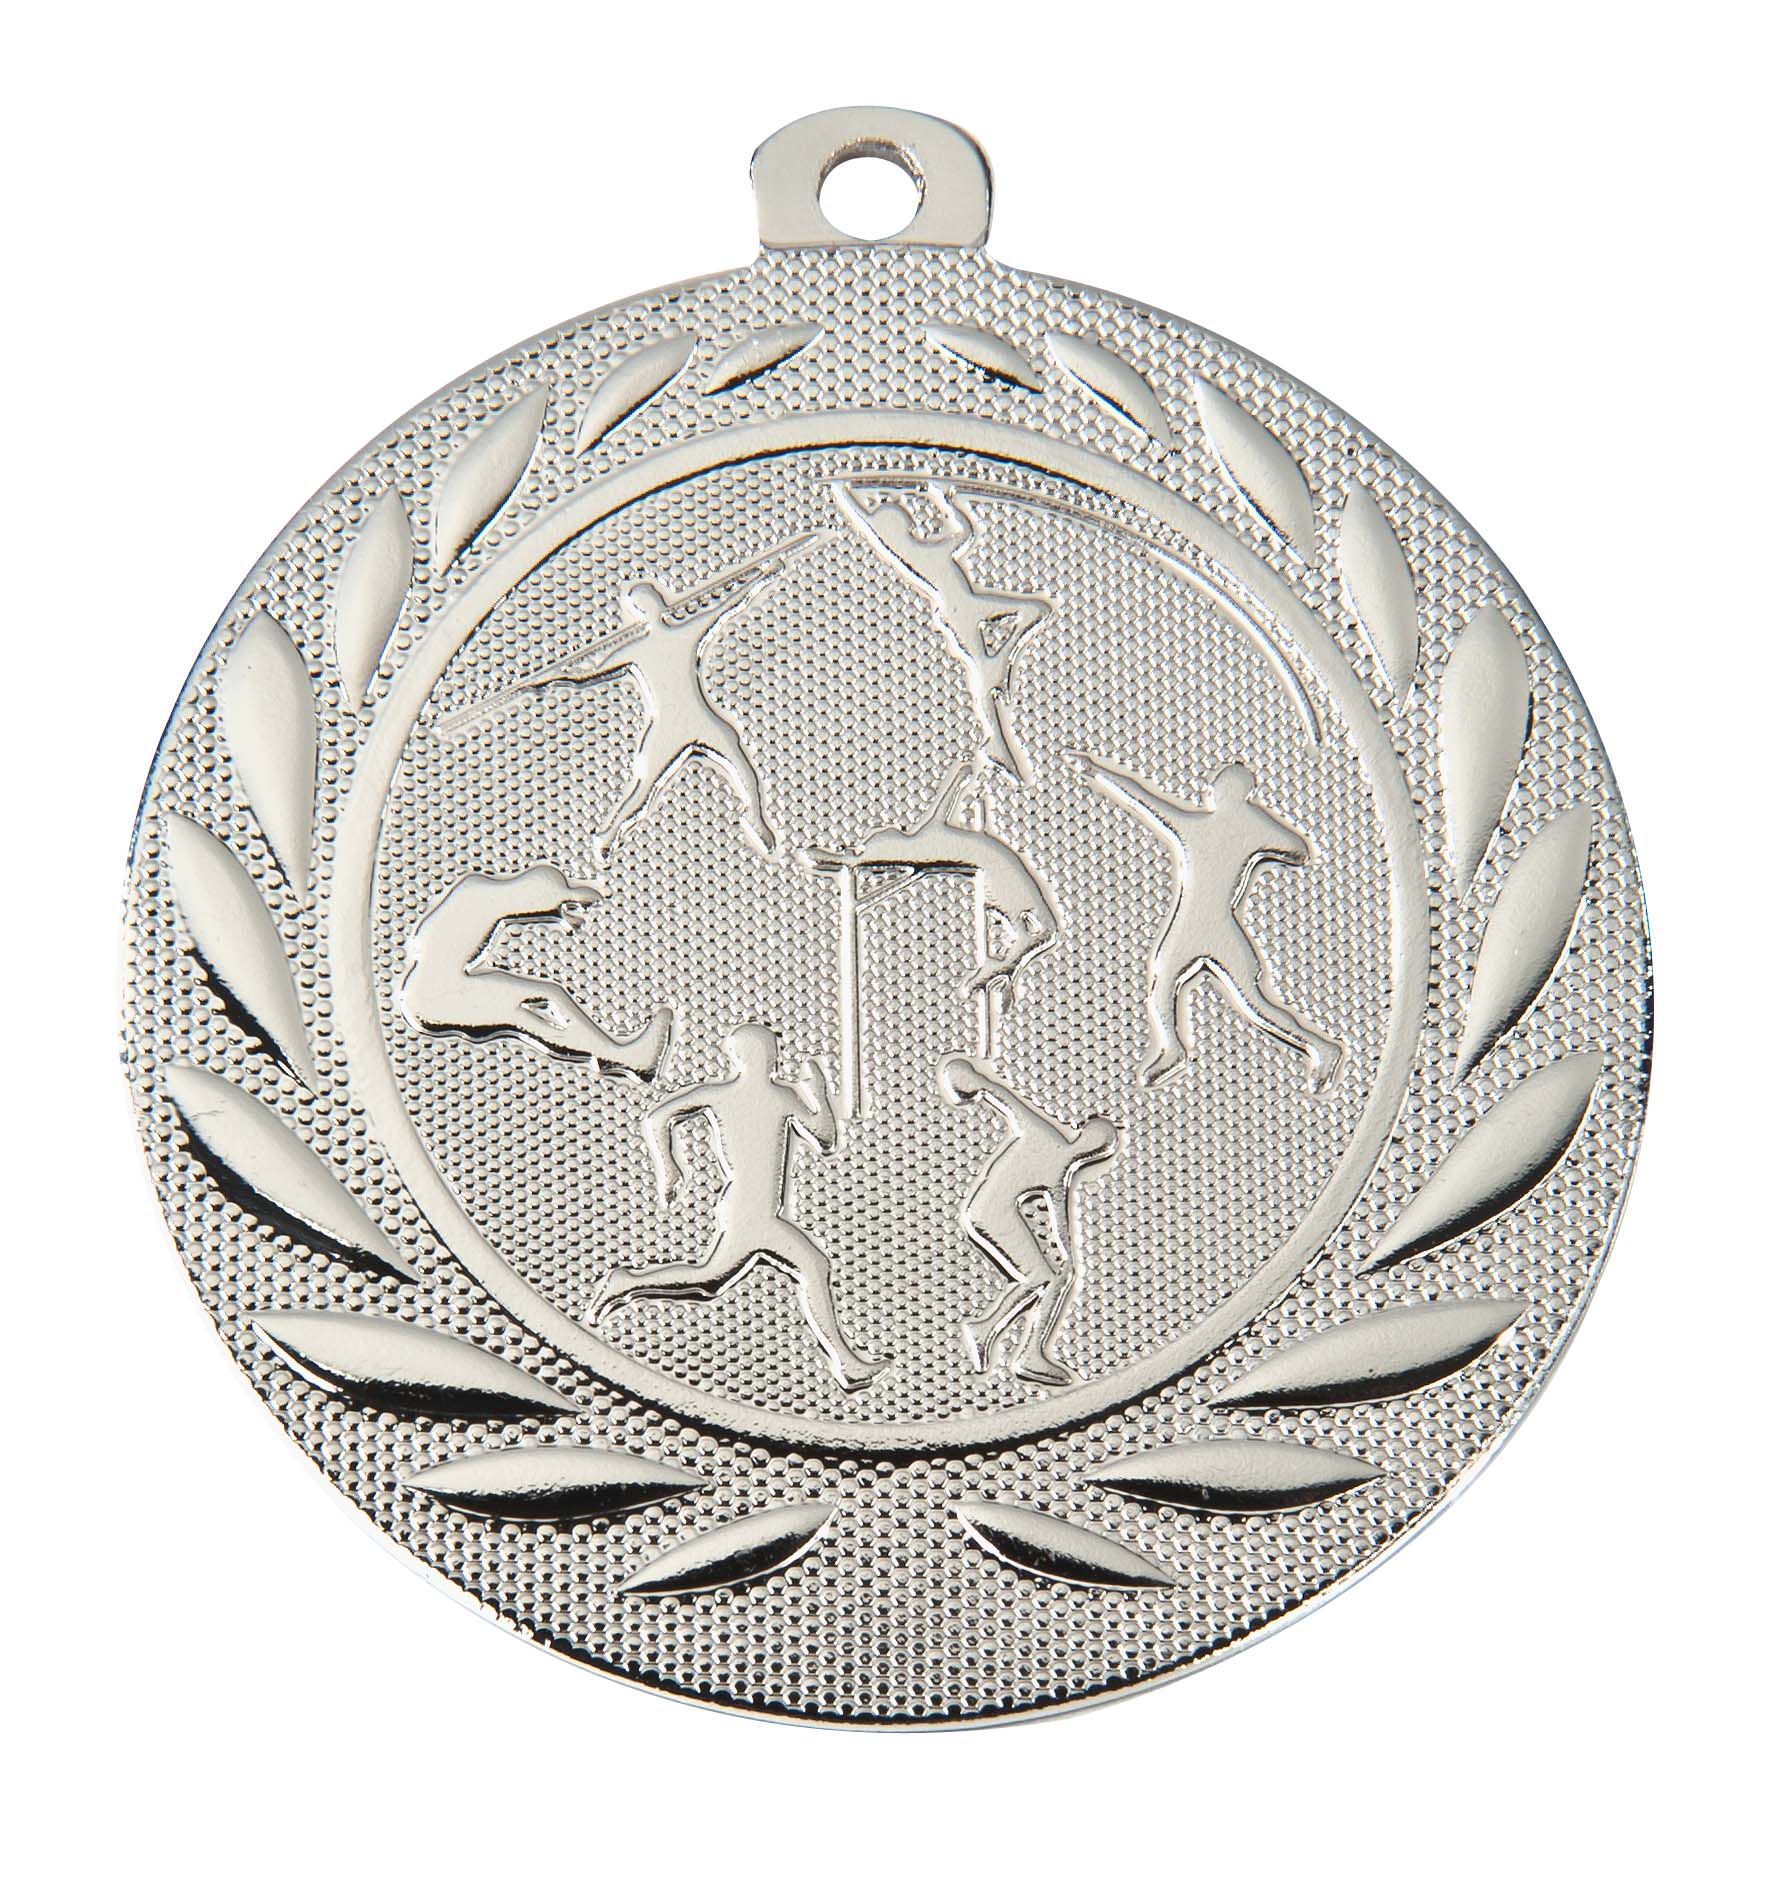 Leichtathletik-Medaille DI5000K inkl. Band und Beschriftung Silber Unmontiert